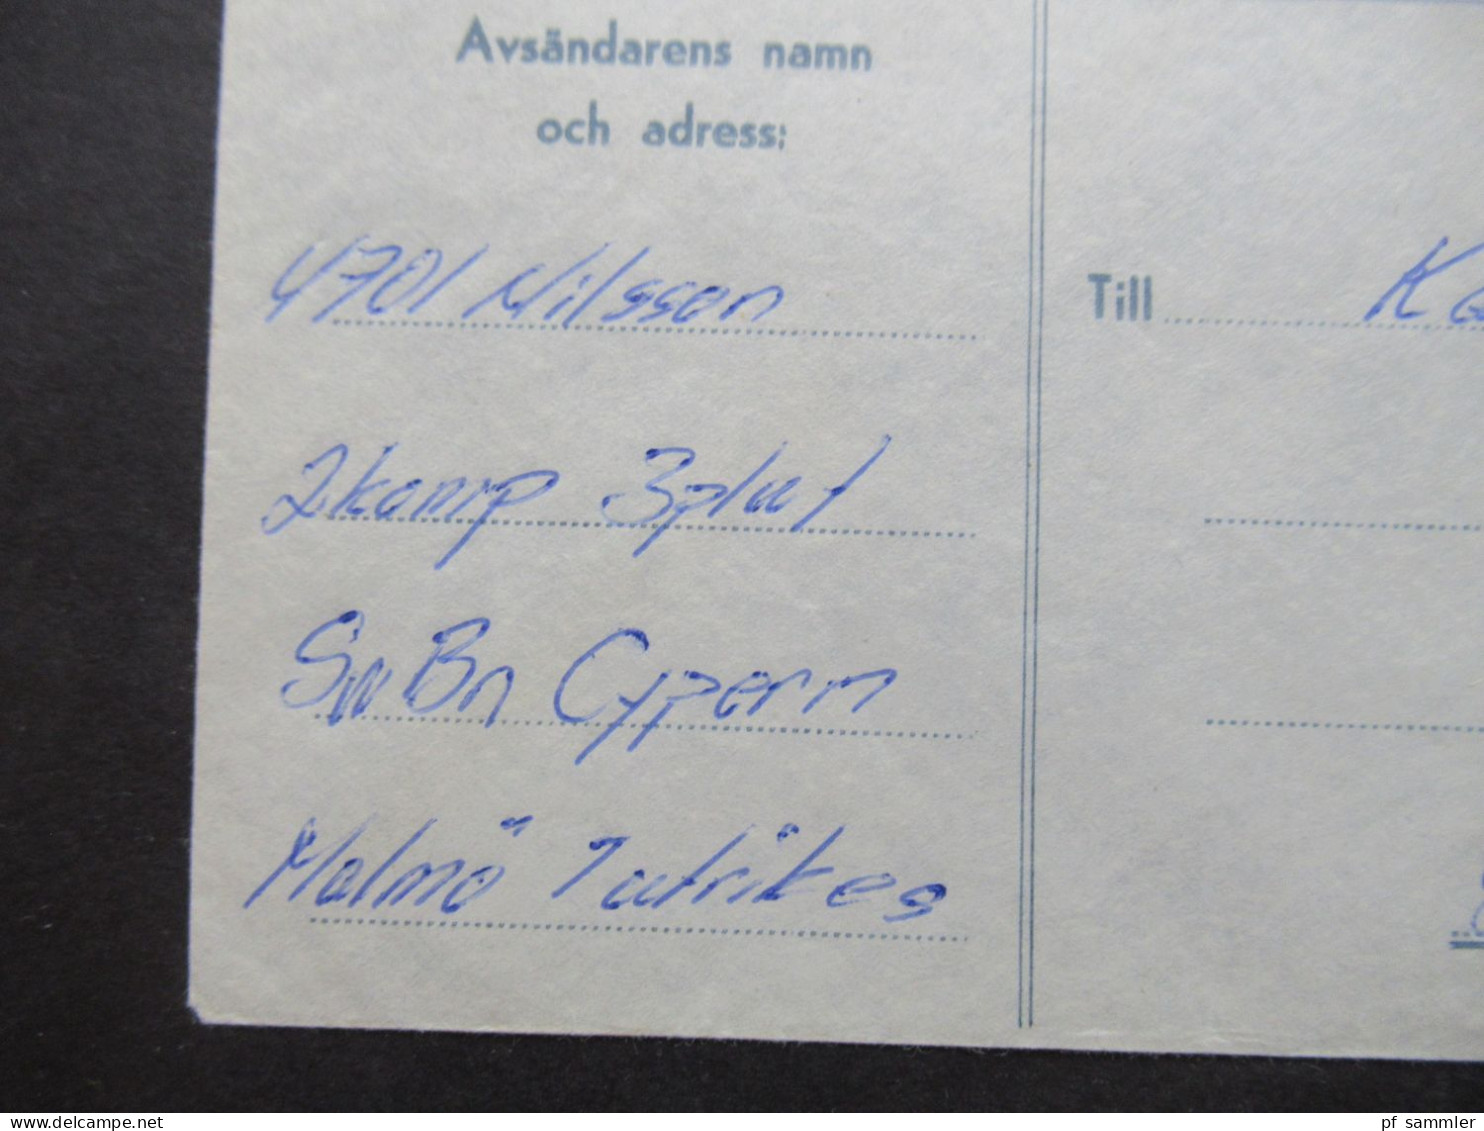 1966 Schweden Militärpost Militärbrev Stempel Svenska FN Bat Cypern / Schwedisches Militär Auf Zypern - Militaires